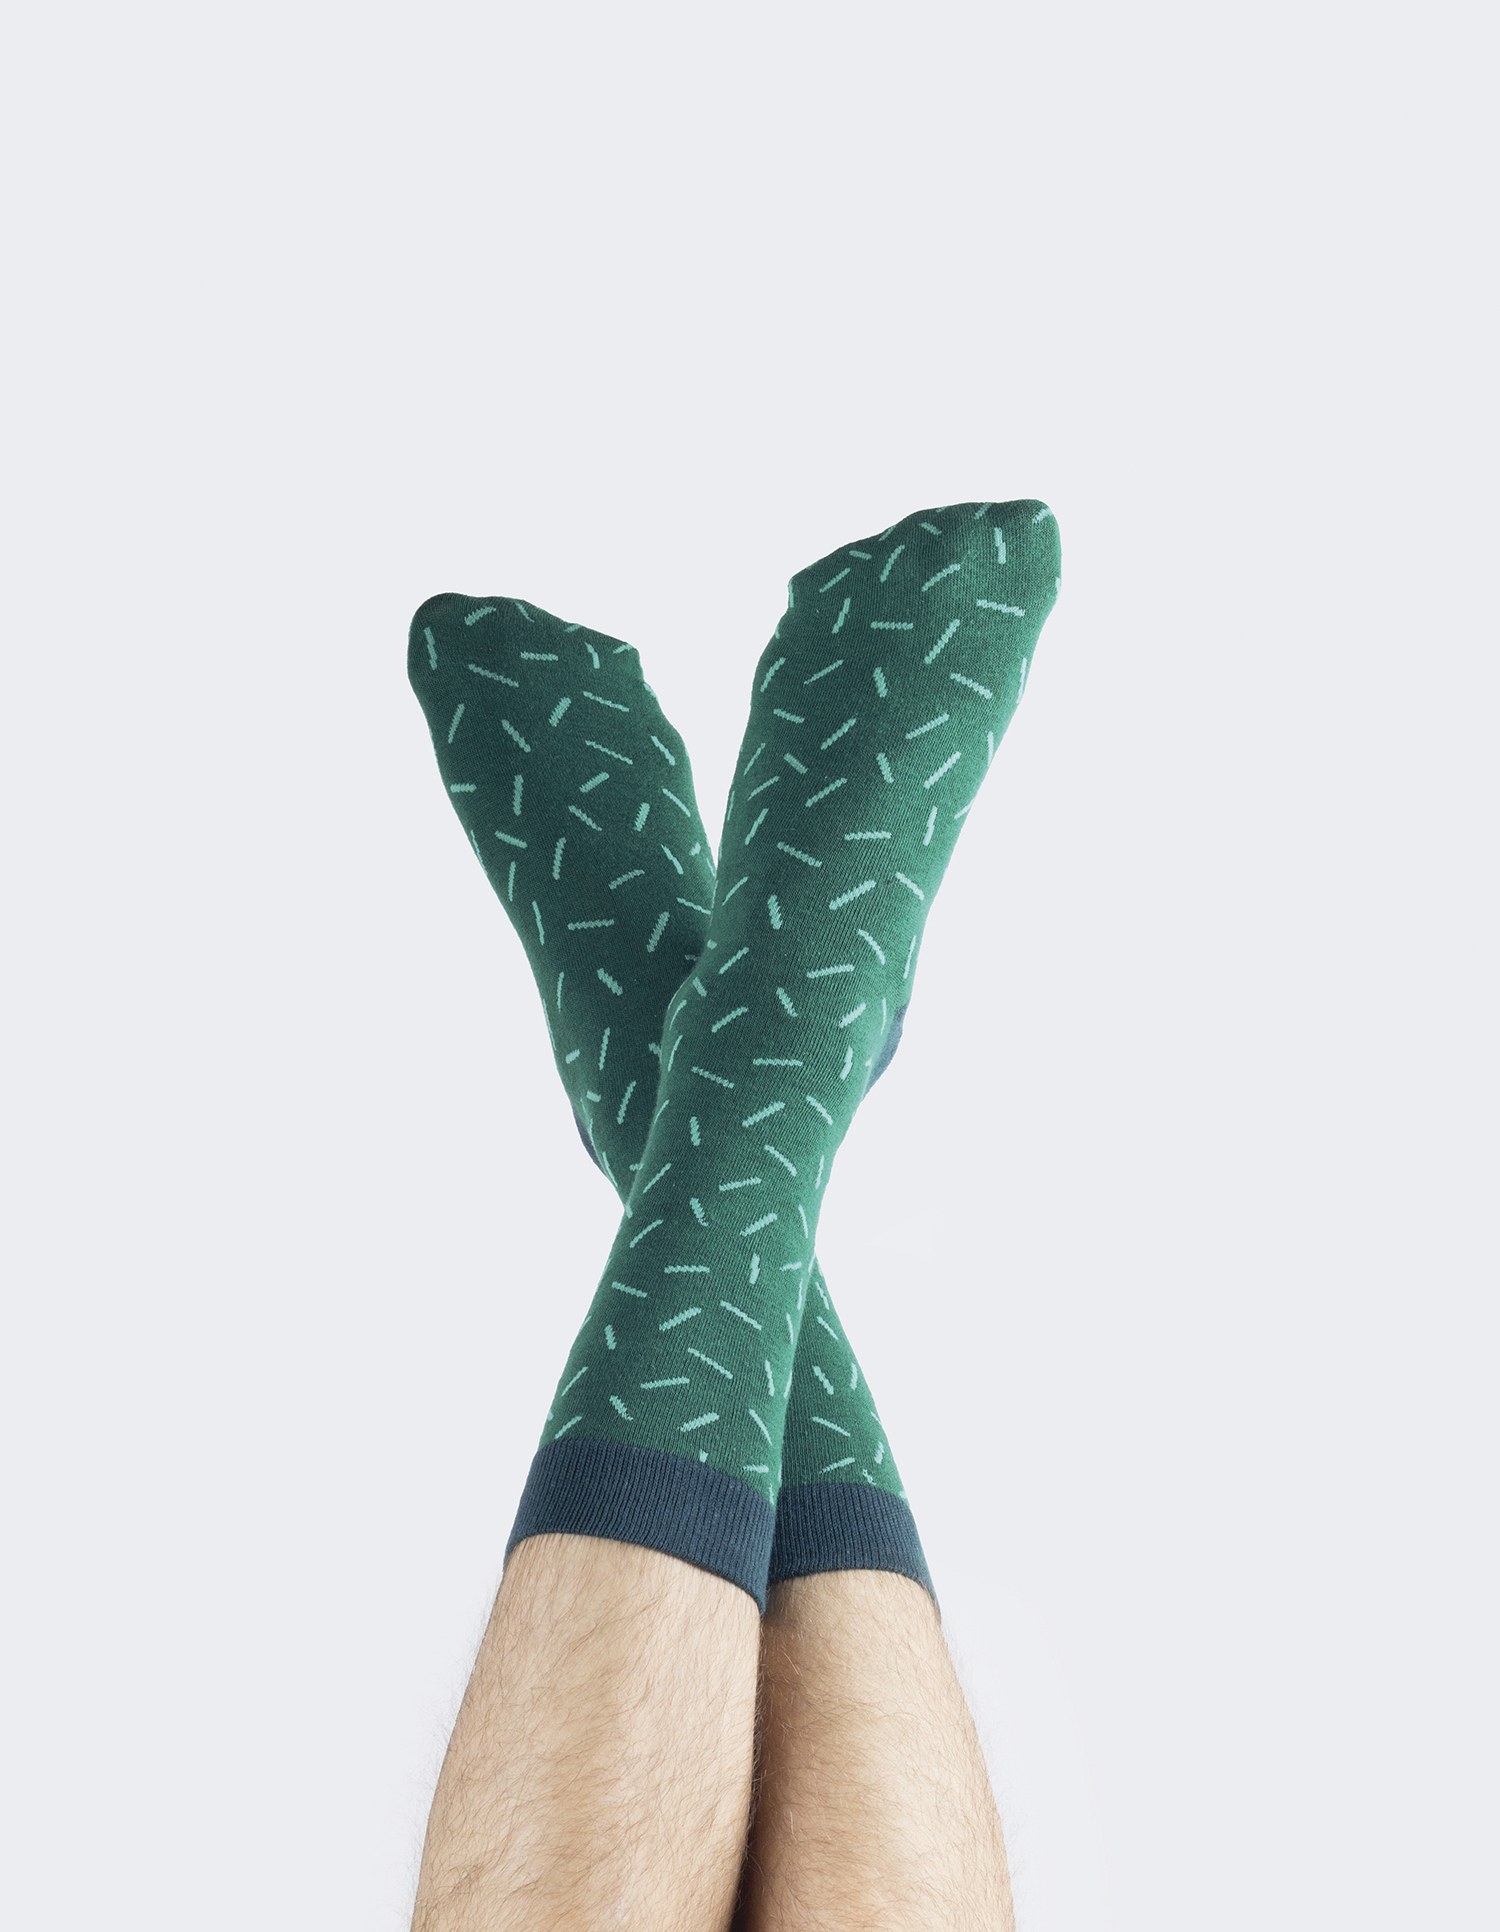 Cactus socks astros